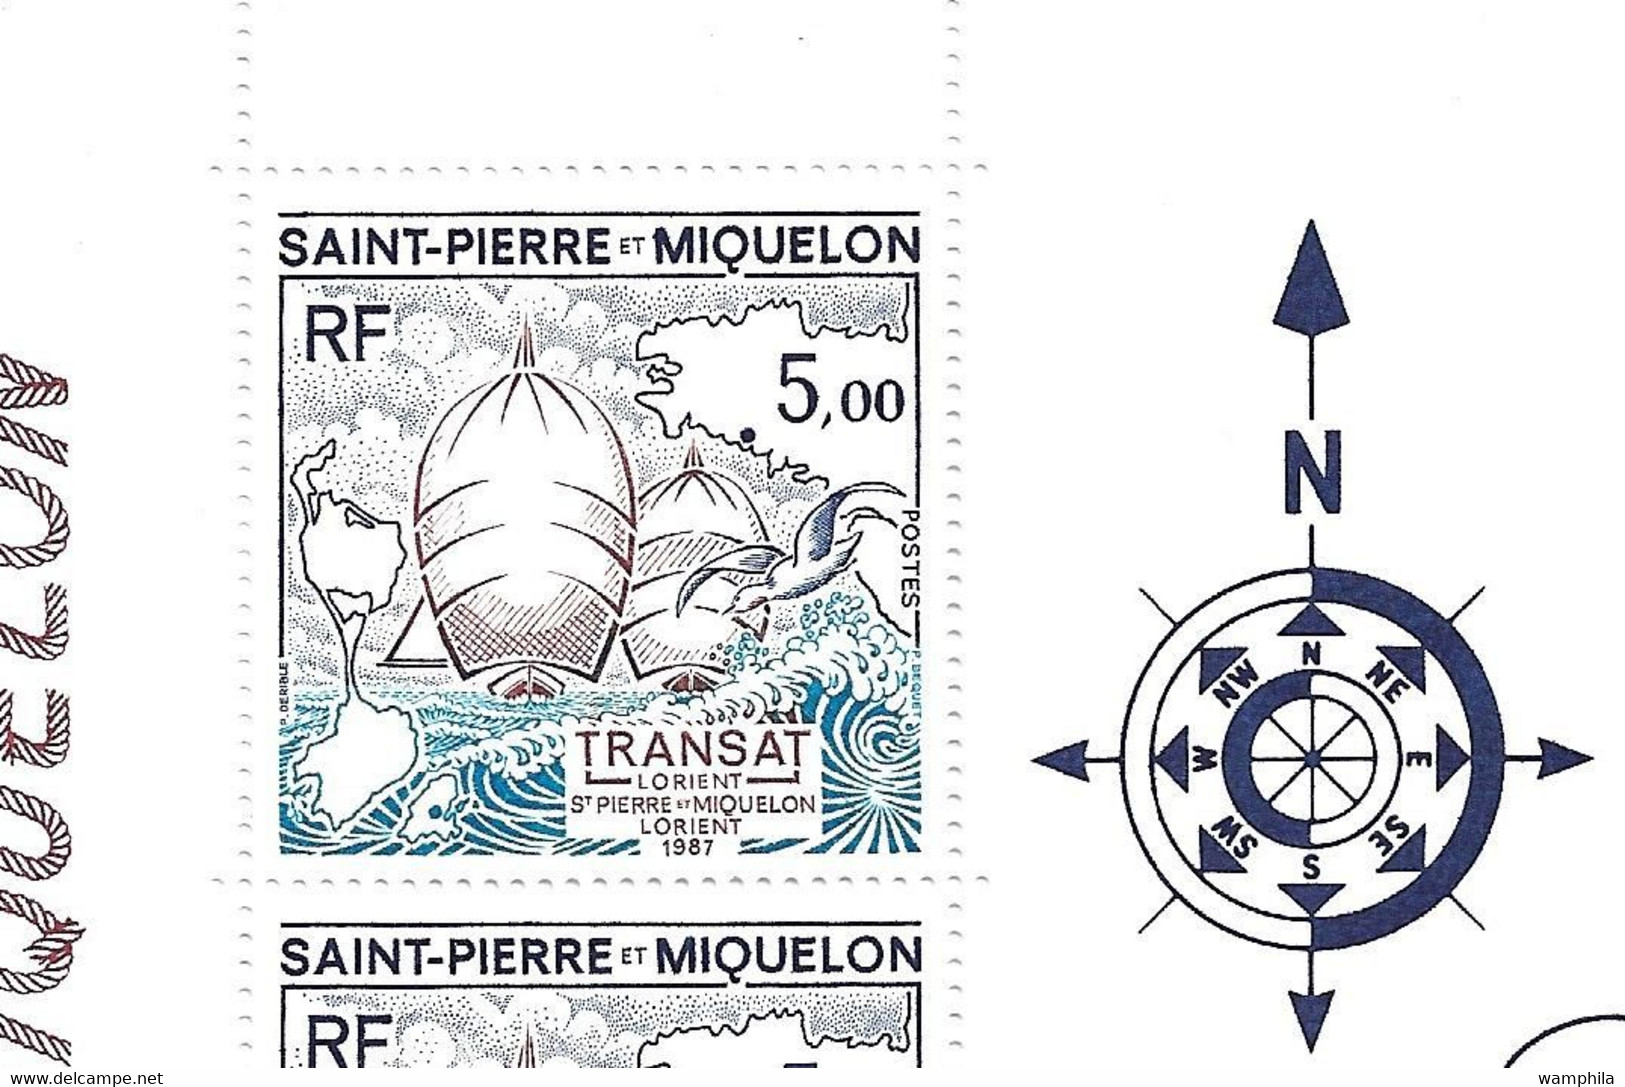 Saint-Pierre et Miquelon (N°487A, 2 feuilles),(492 et 494/495 par 1 feuille) cote 139€